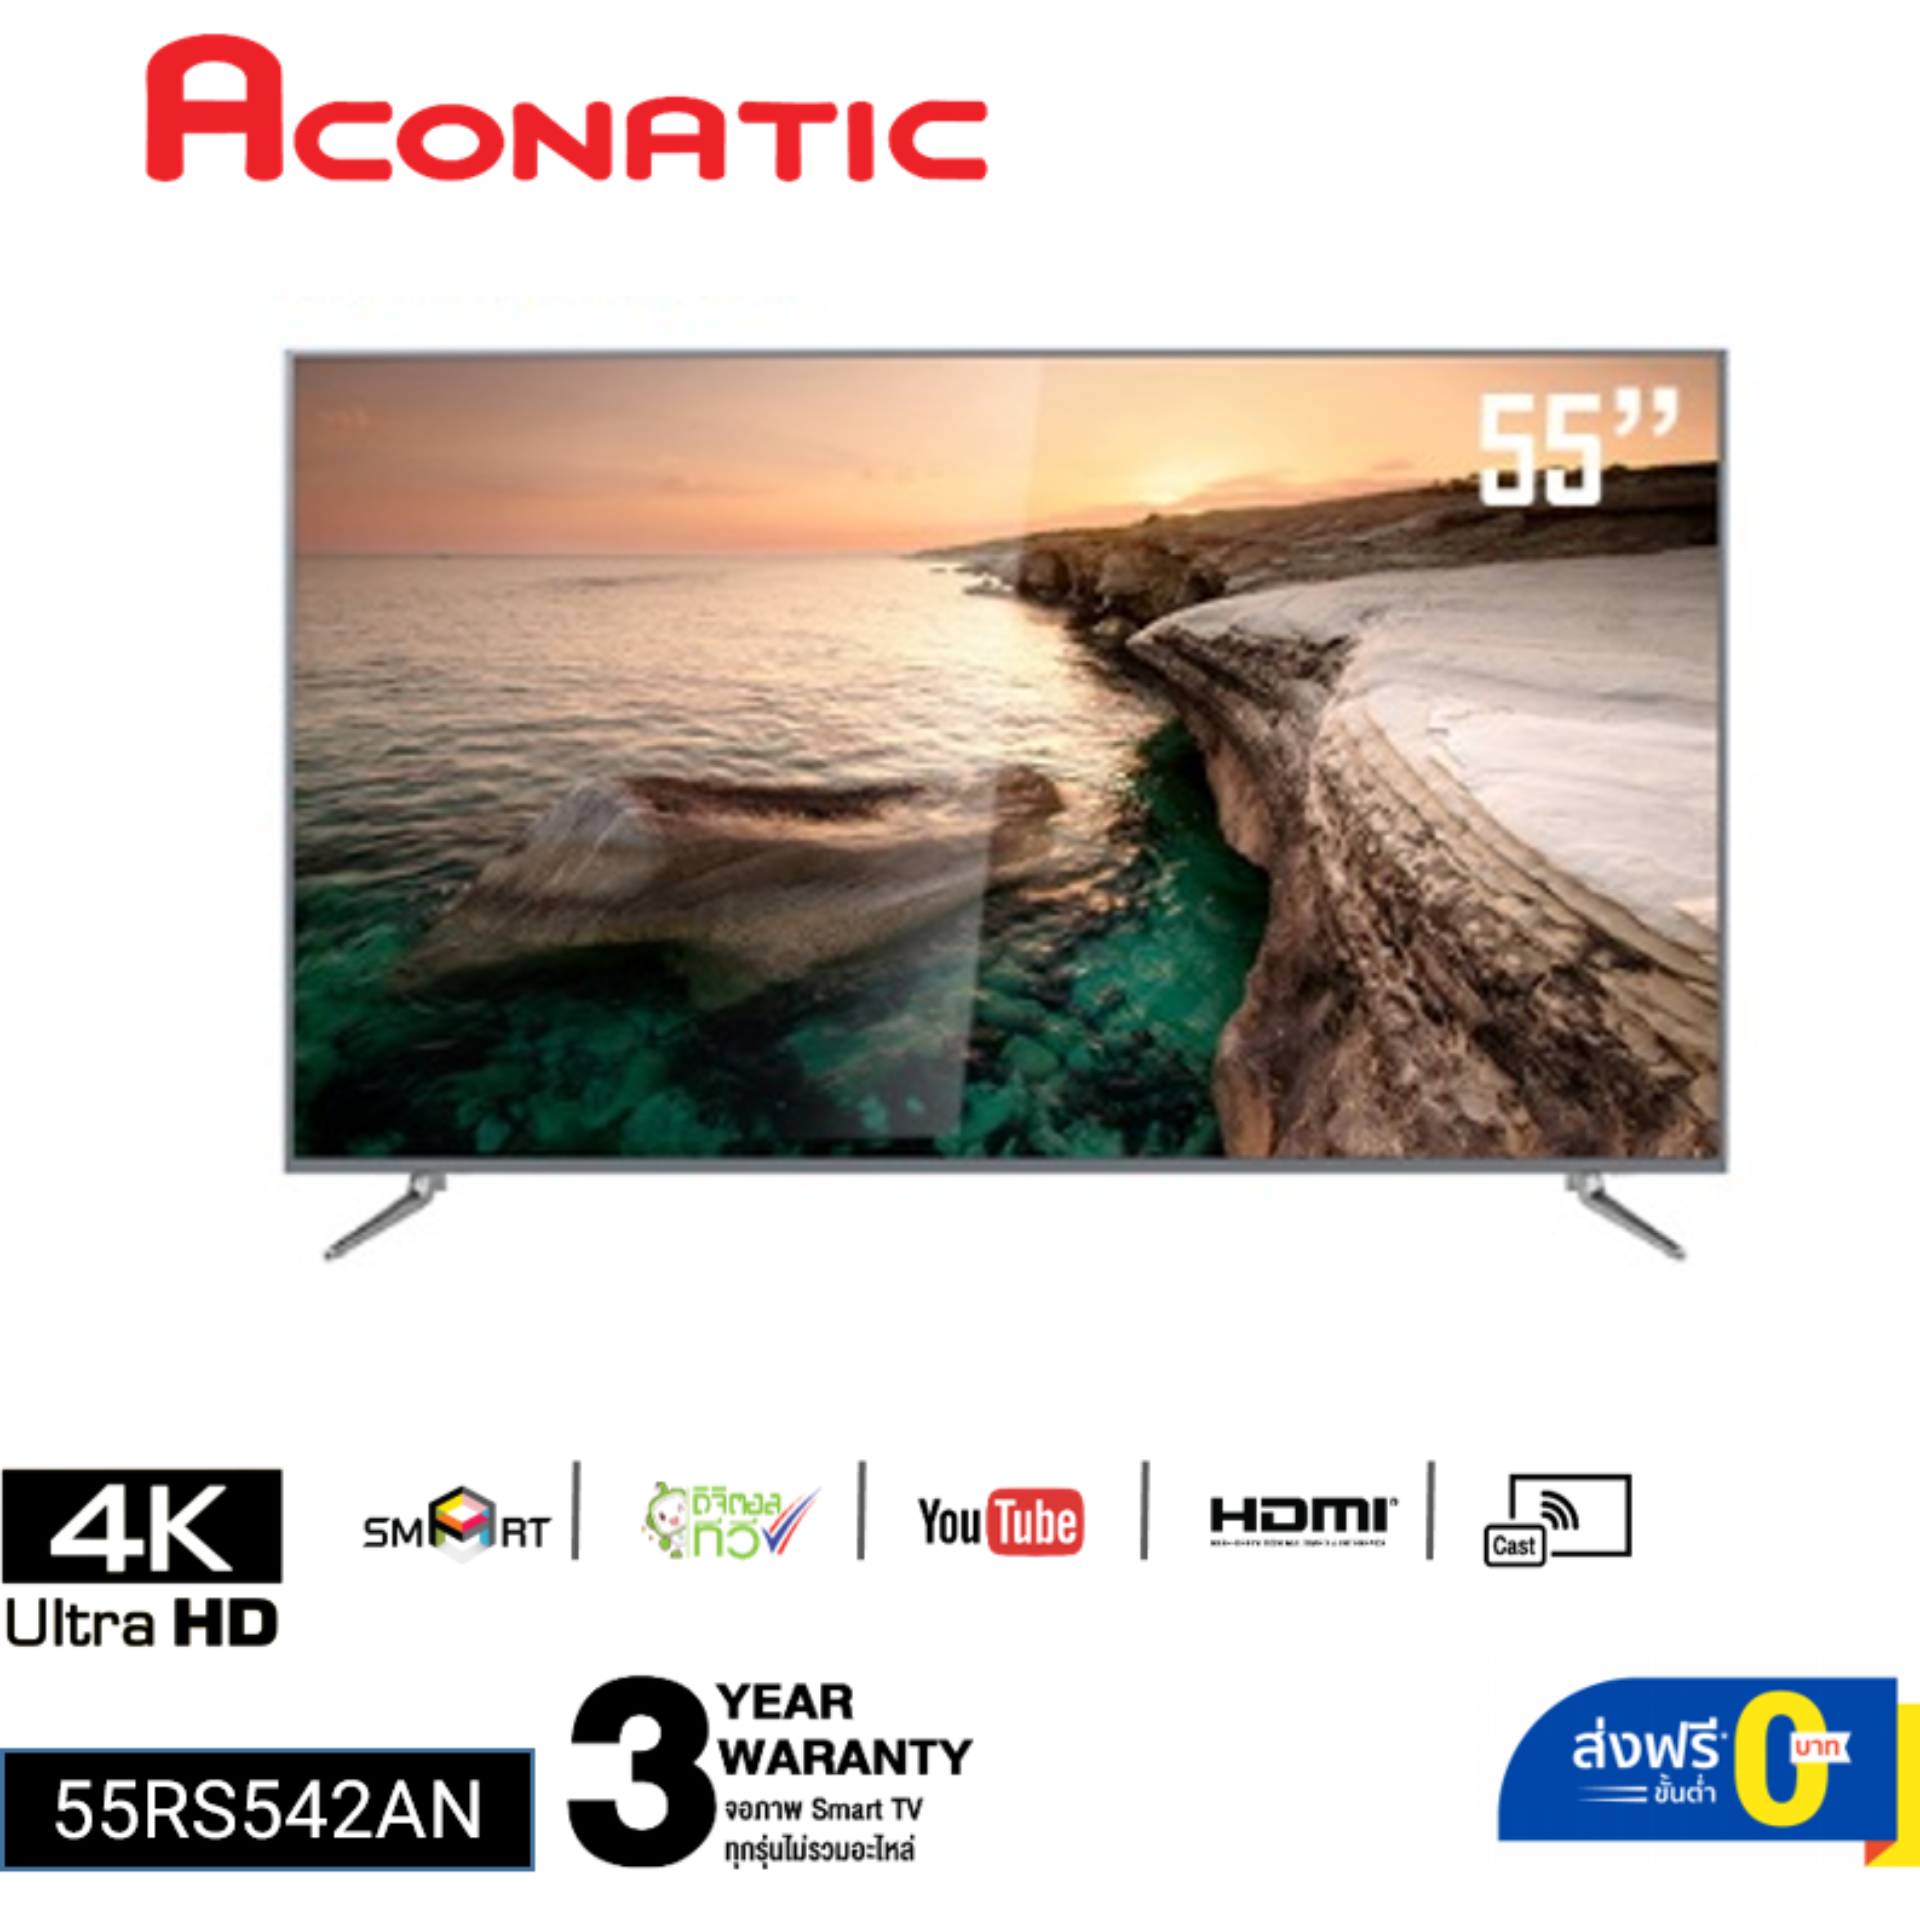 ทีวี aconatic 32 นิ้ว smart tv ราคา